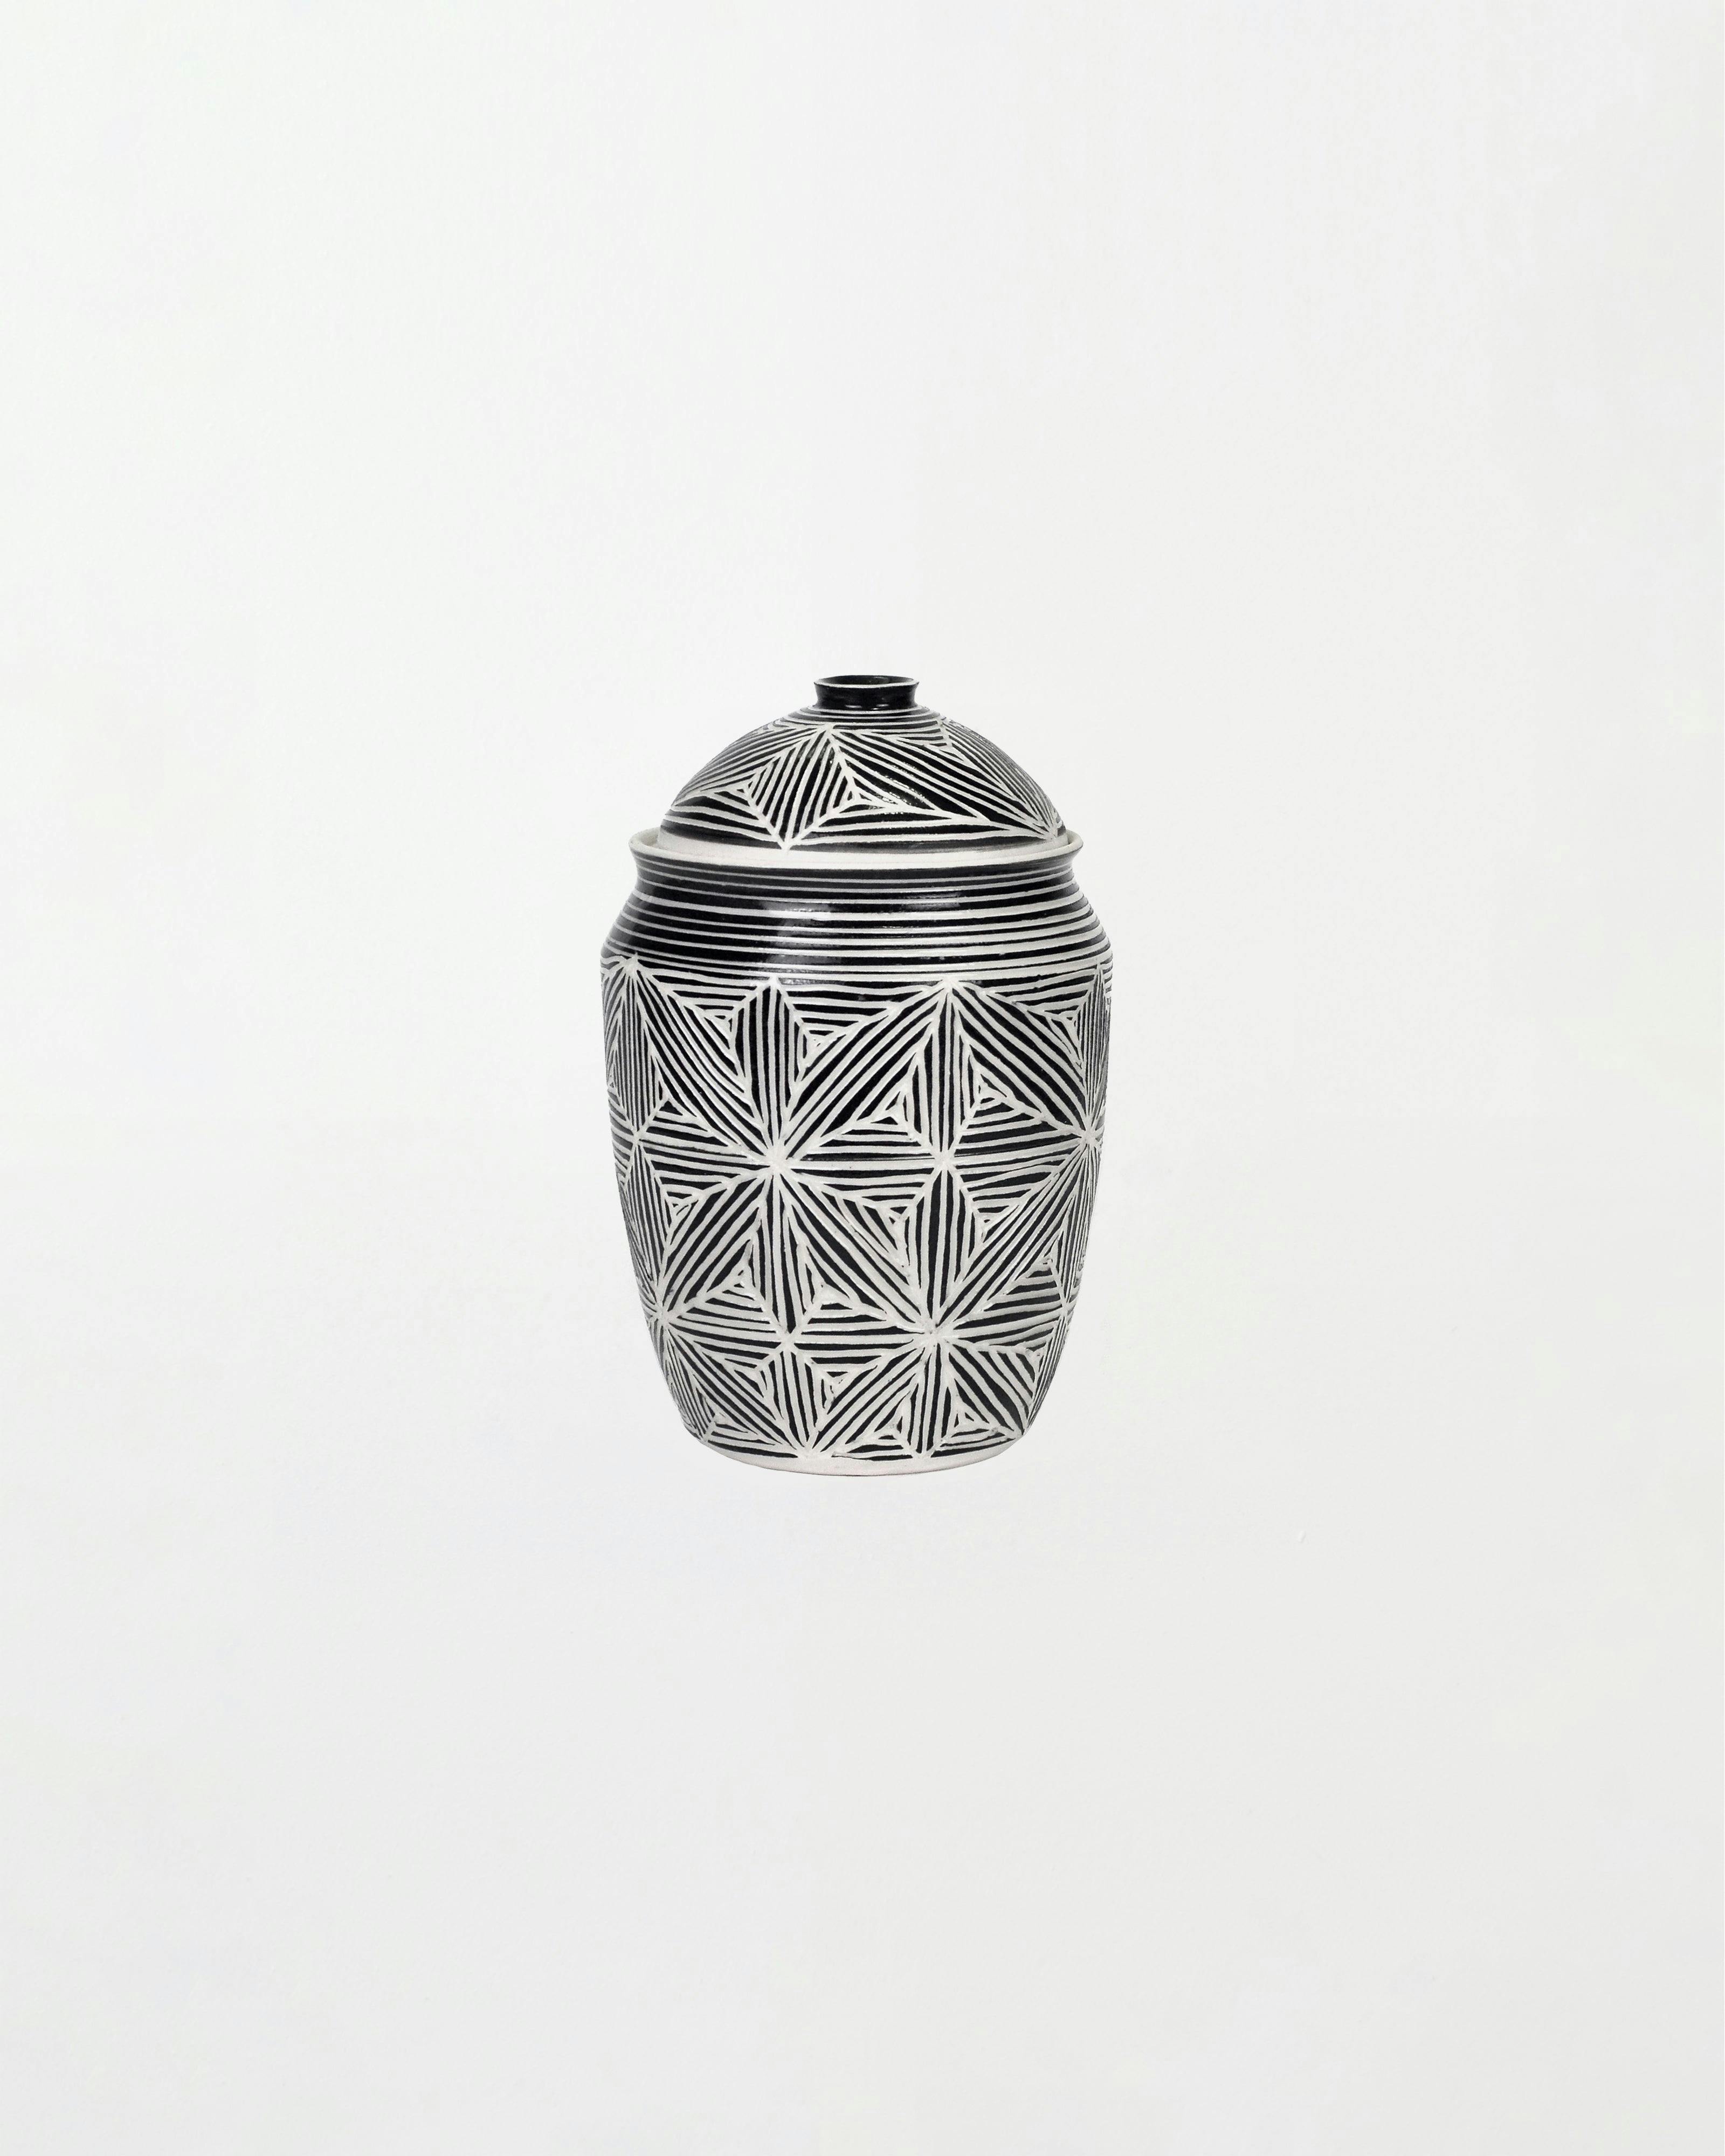 Dana Bechert - Lidded Jar - Sculpture